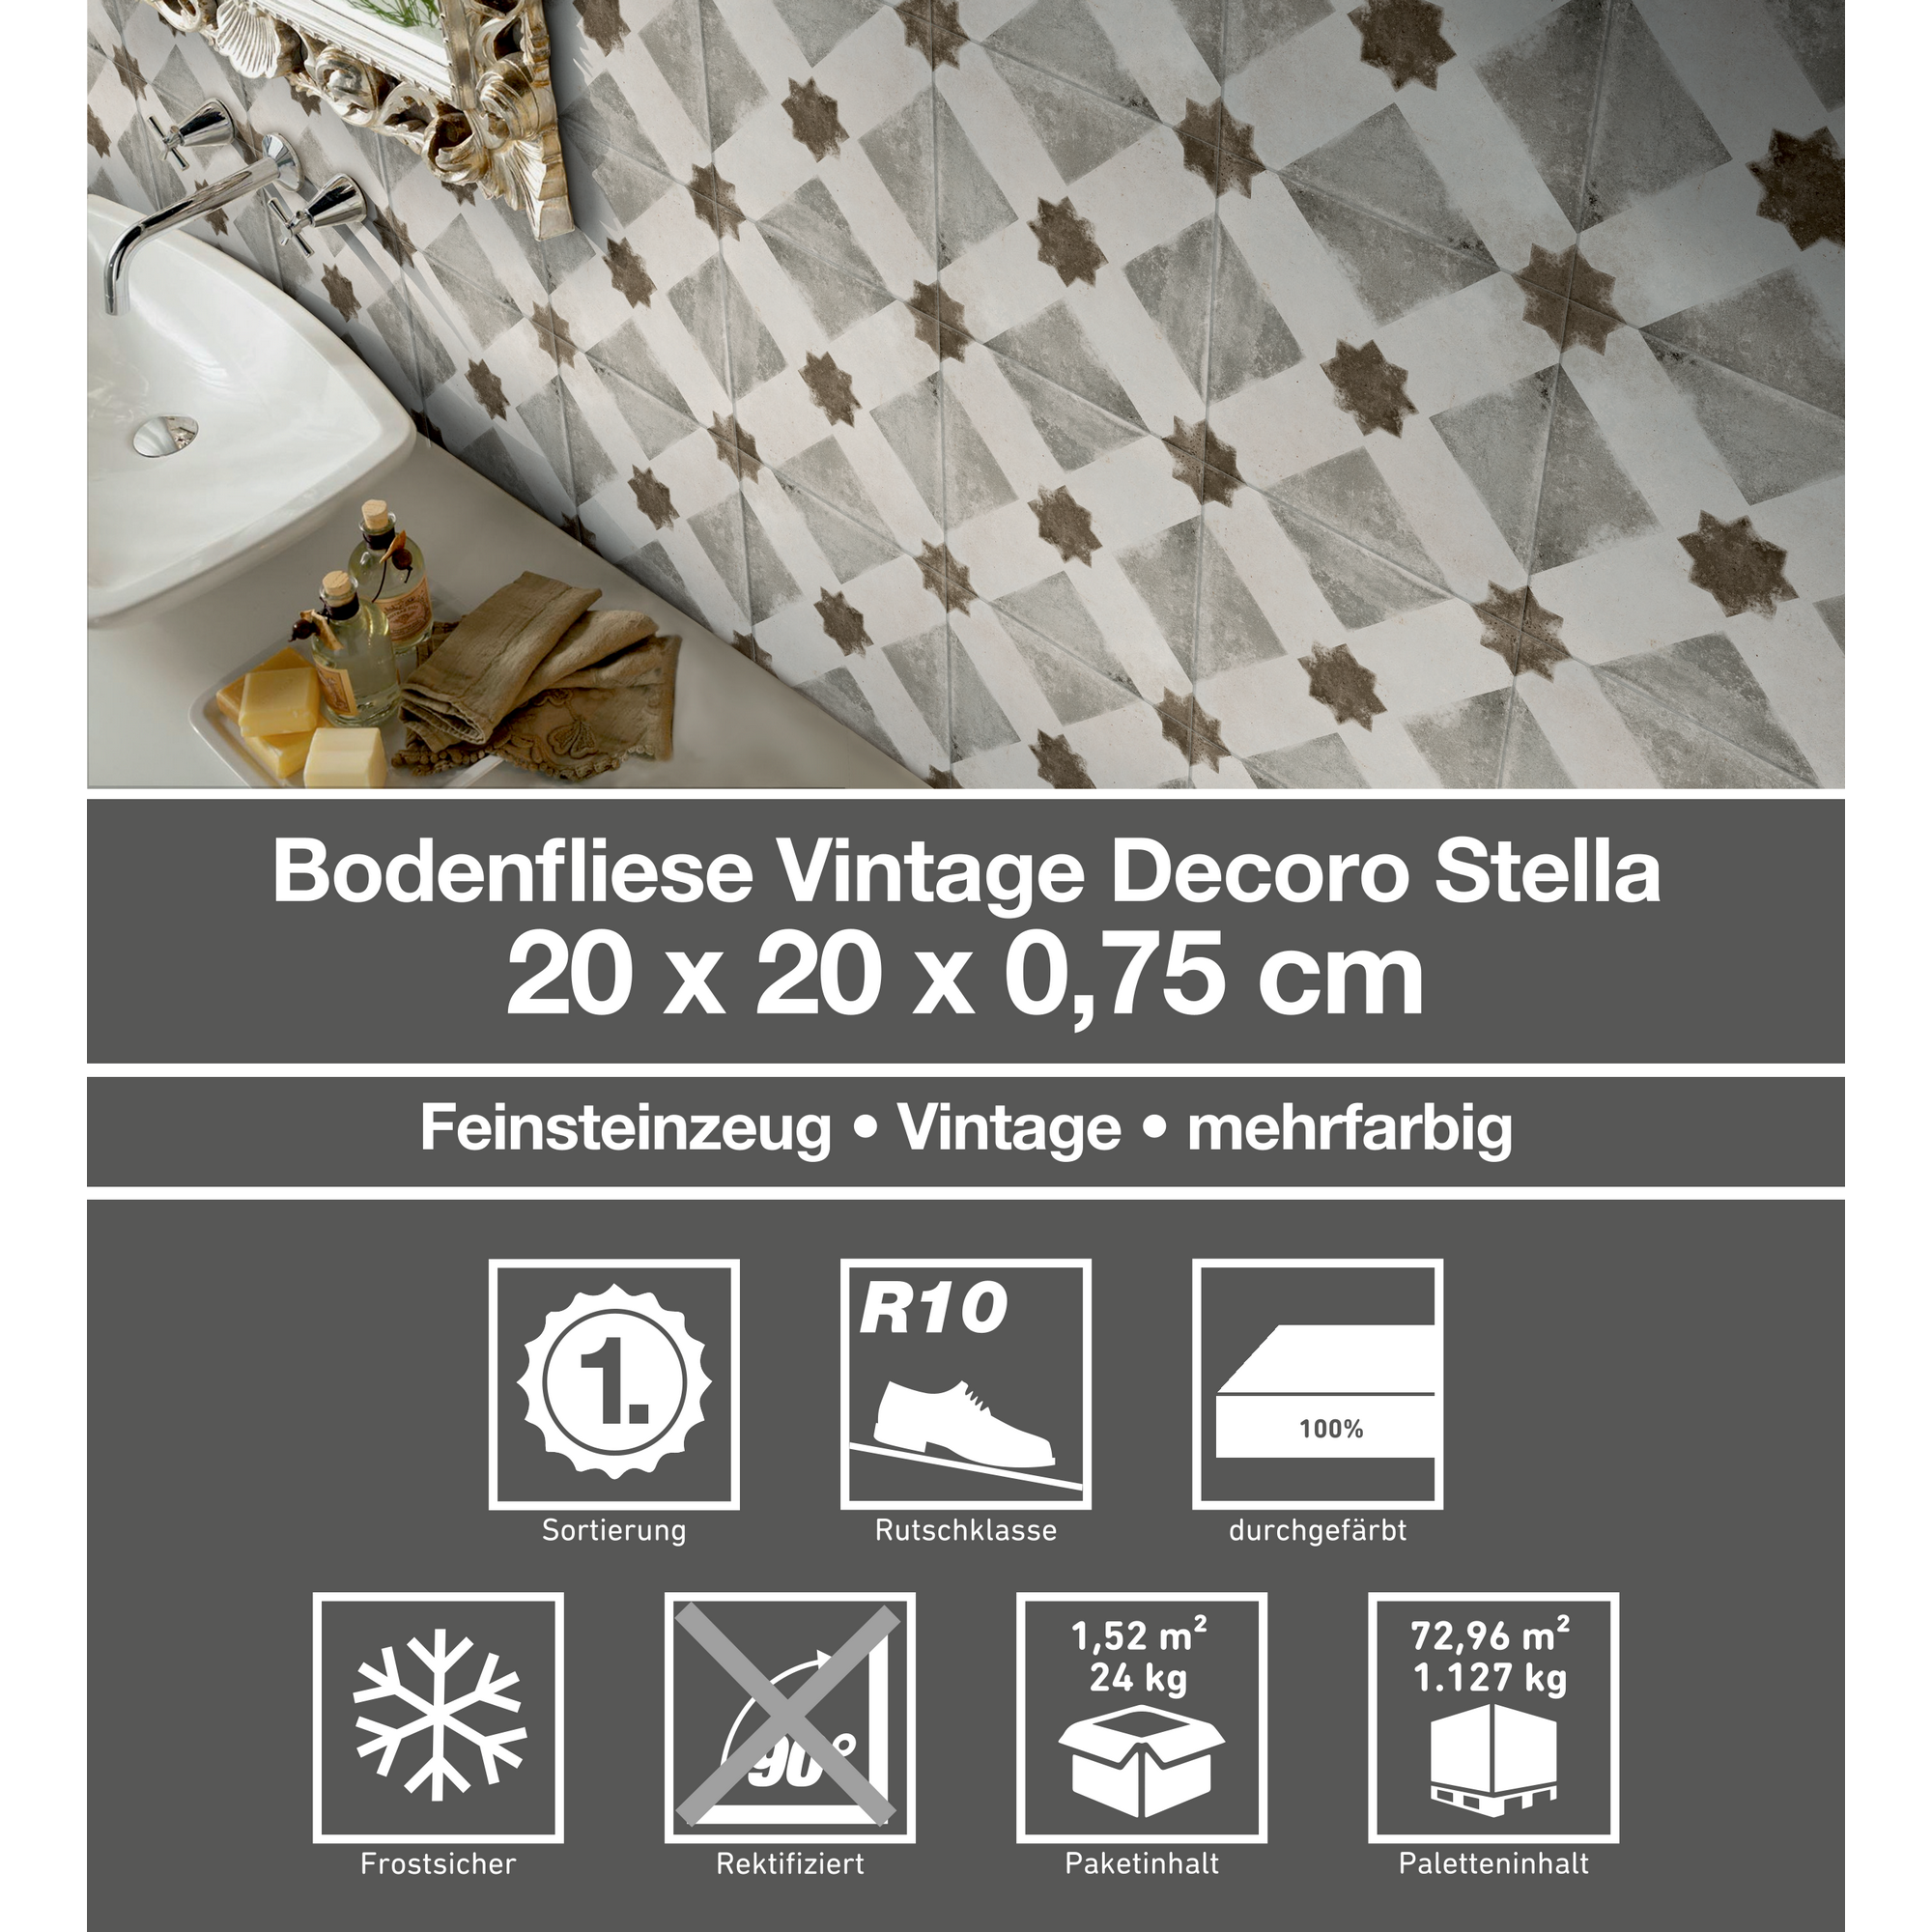 Bodenfliese 'Vintage' Feinsteinzeug stella 20 x 20 cm + product picture